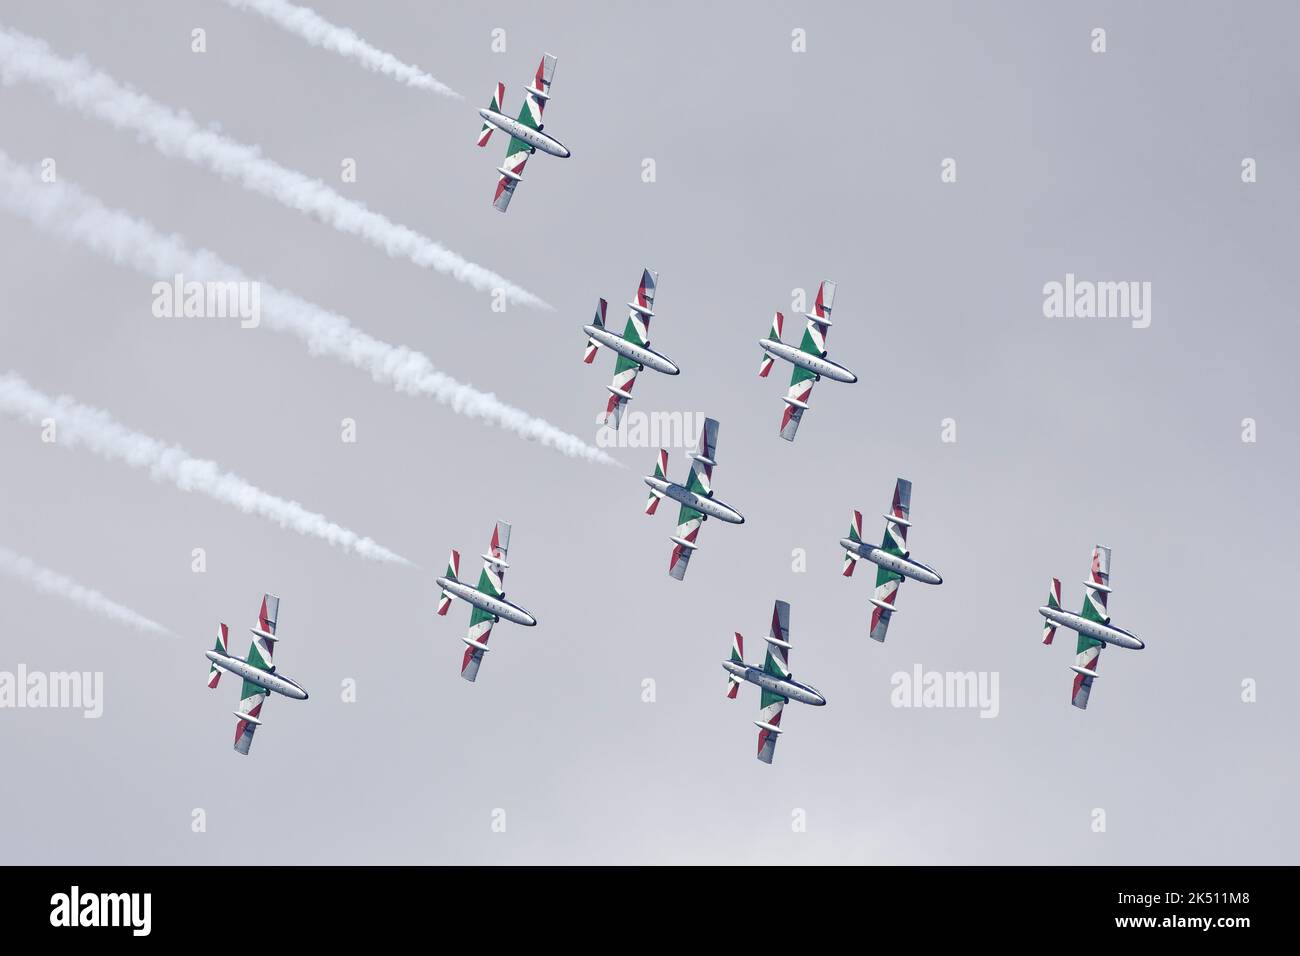 Die Frecce Tricolori, eine hervorragende Flugvorstellung der italienischen Luftwaffe als ihr Aerobatic Display Team, schweben in enger Formation über den Himmel Stockfoto